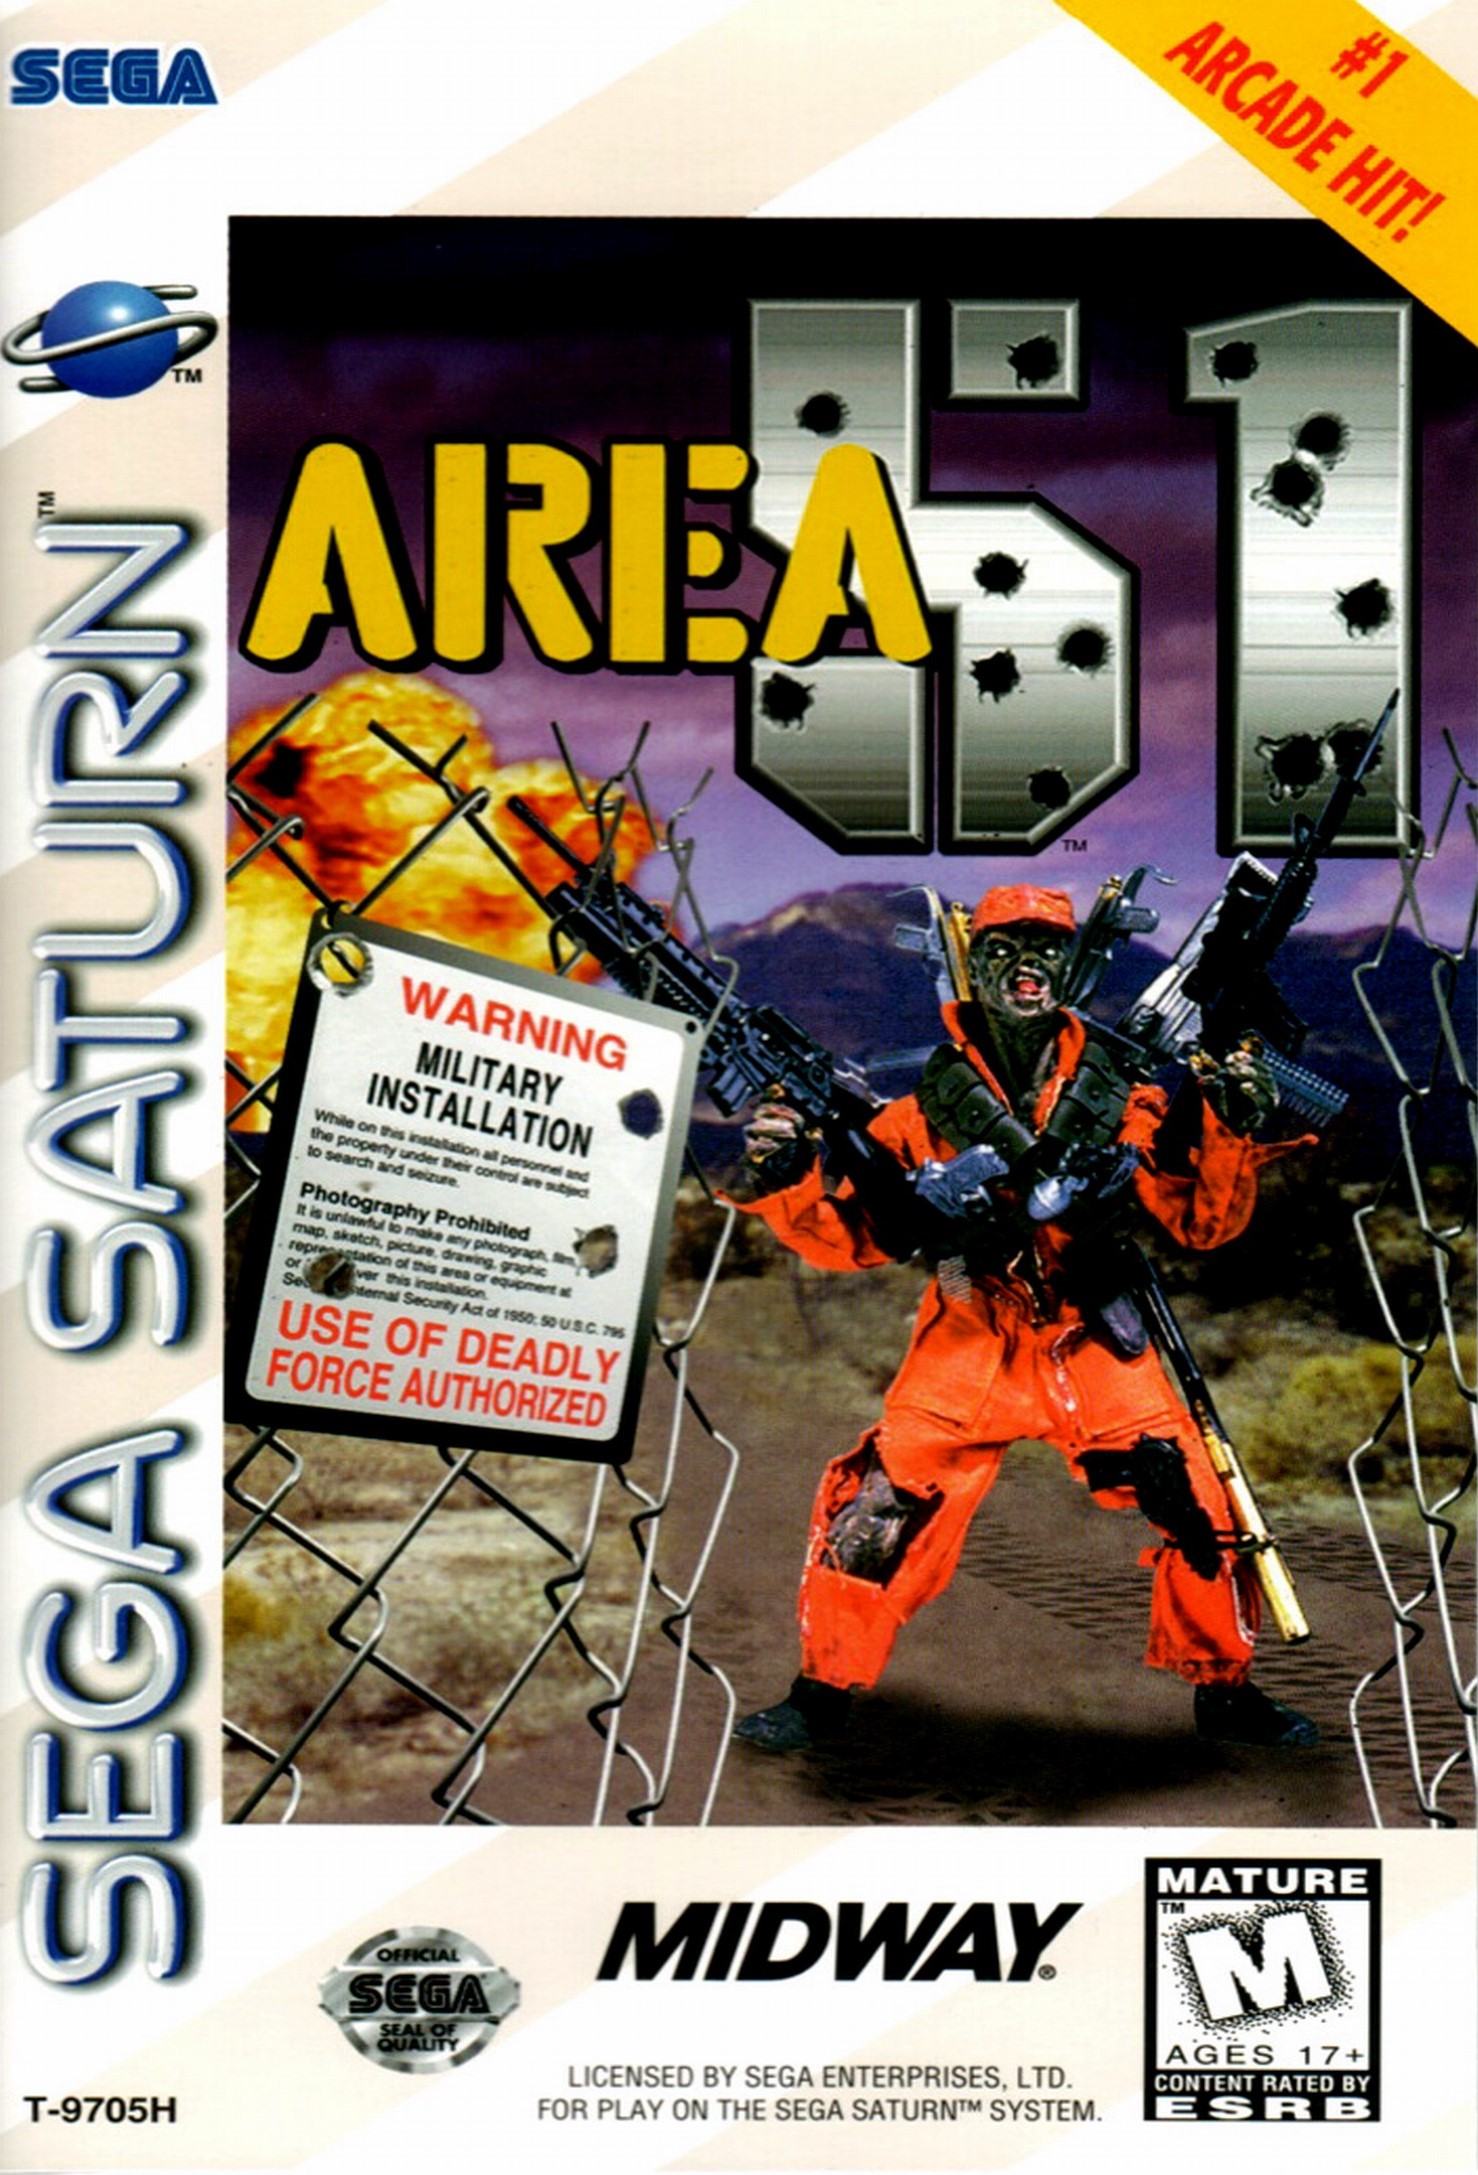 'Area 51'